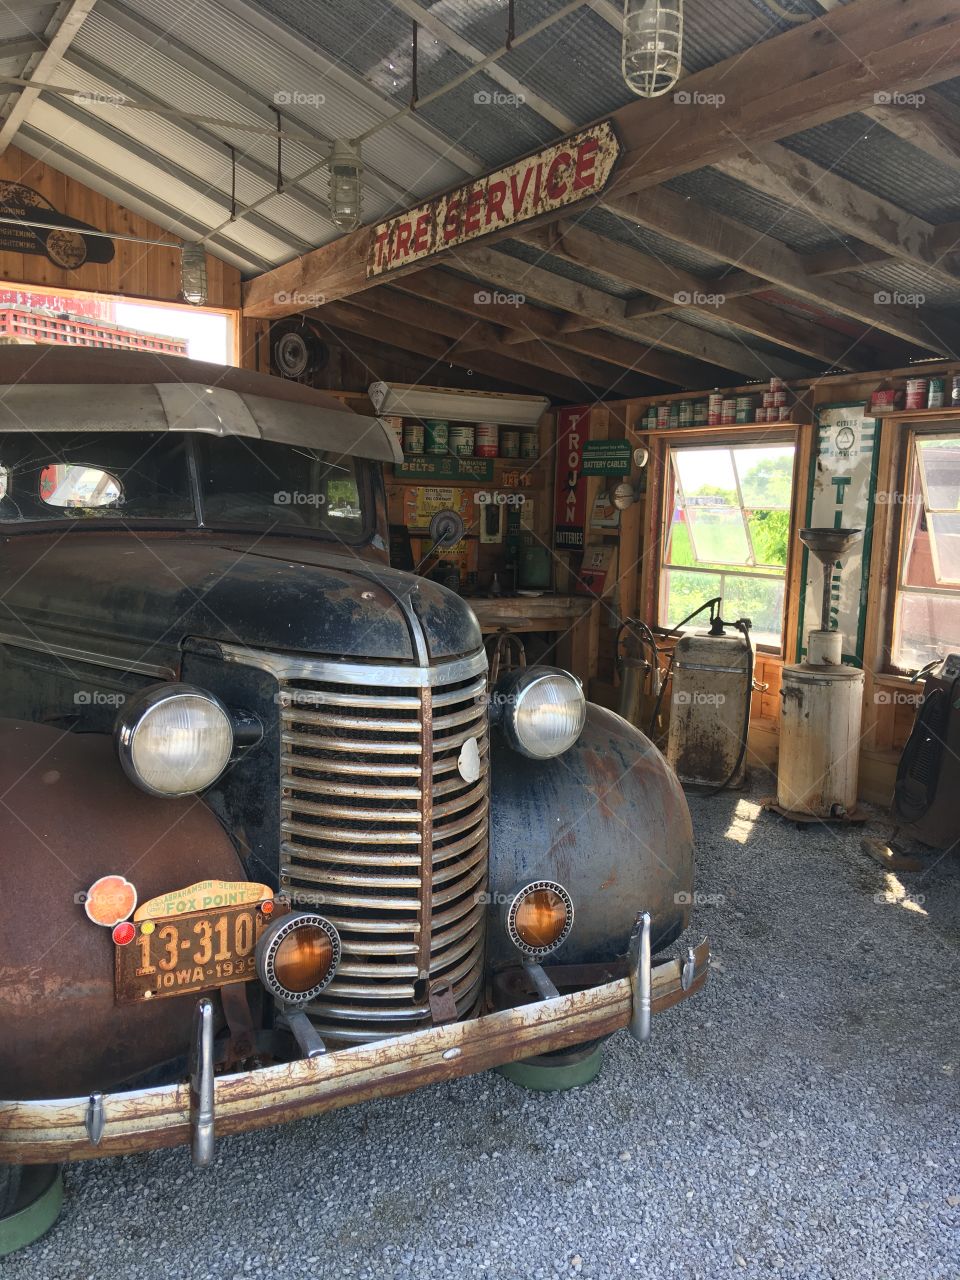 Vintage 1950s auto mechanic shop